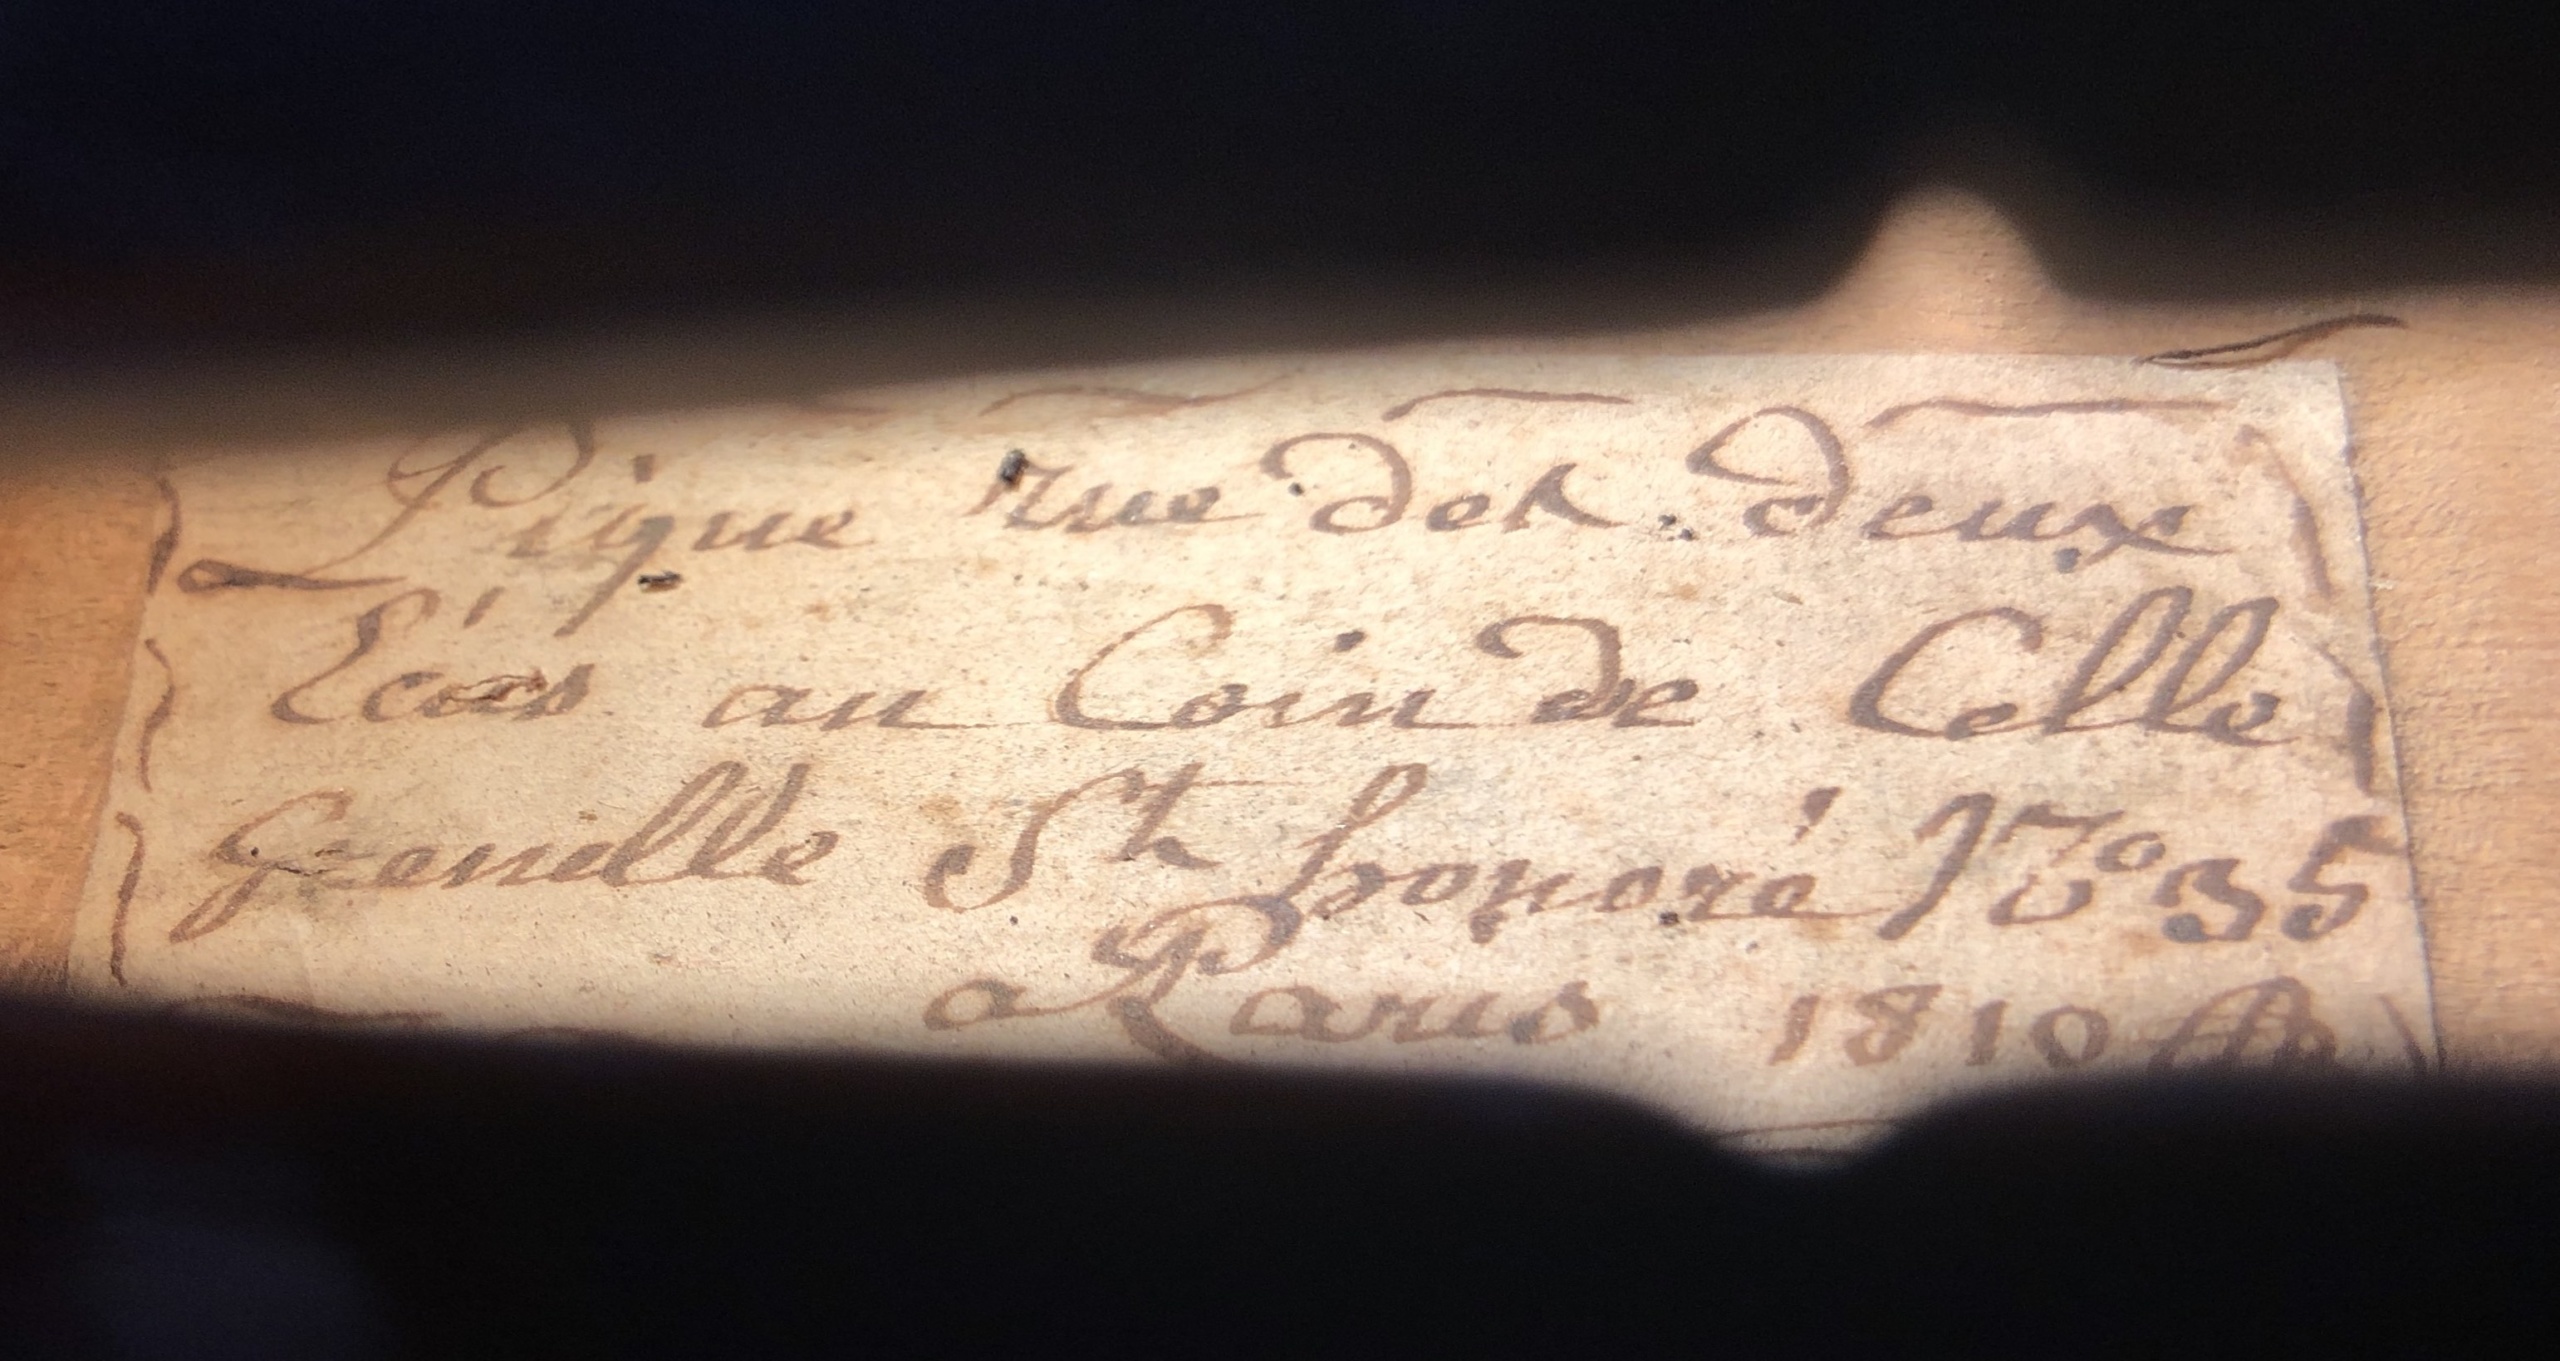 The original manuscript label